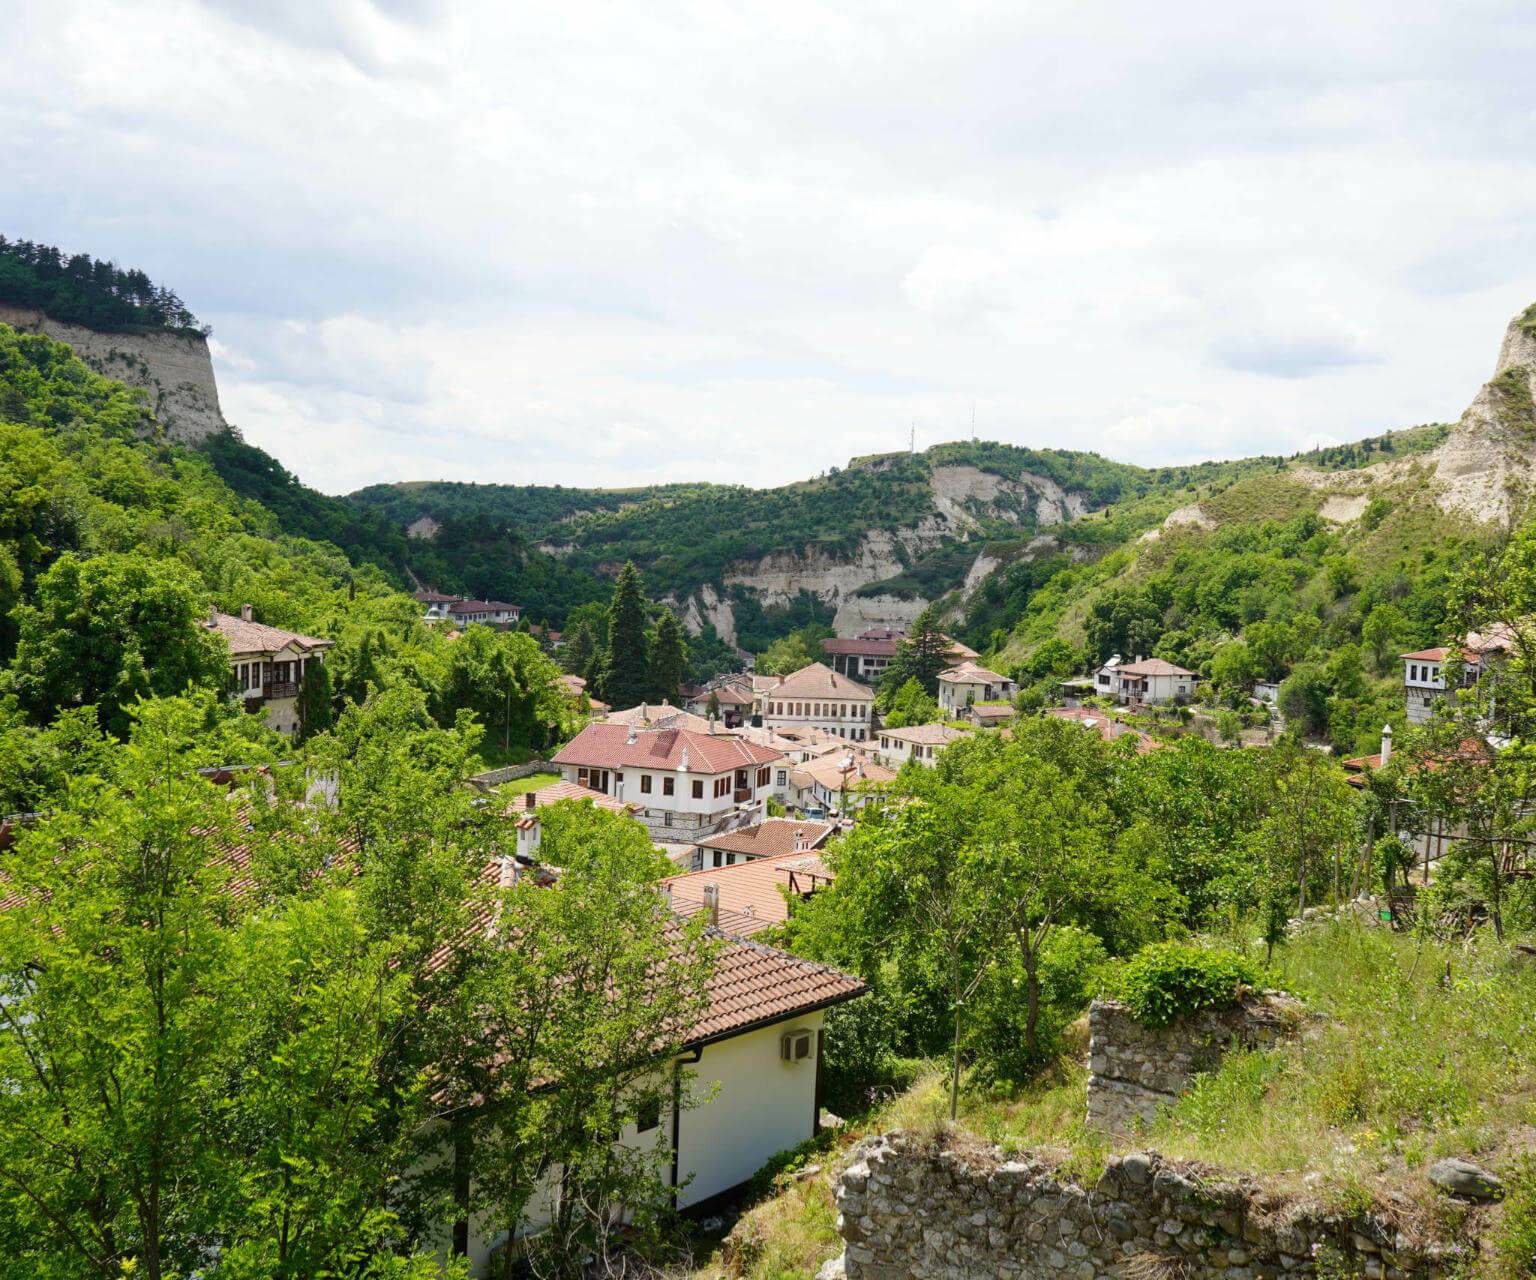 Von oben blickt man über die Häuserdächer und Natur der bulgarischen Stadt Melnik.